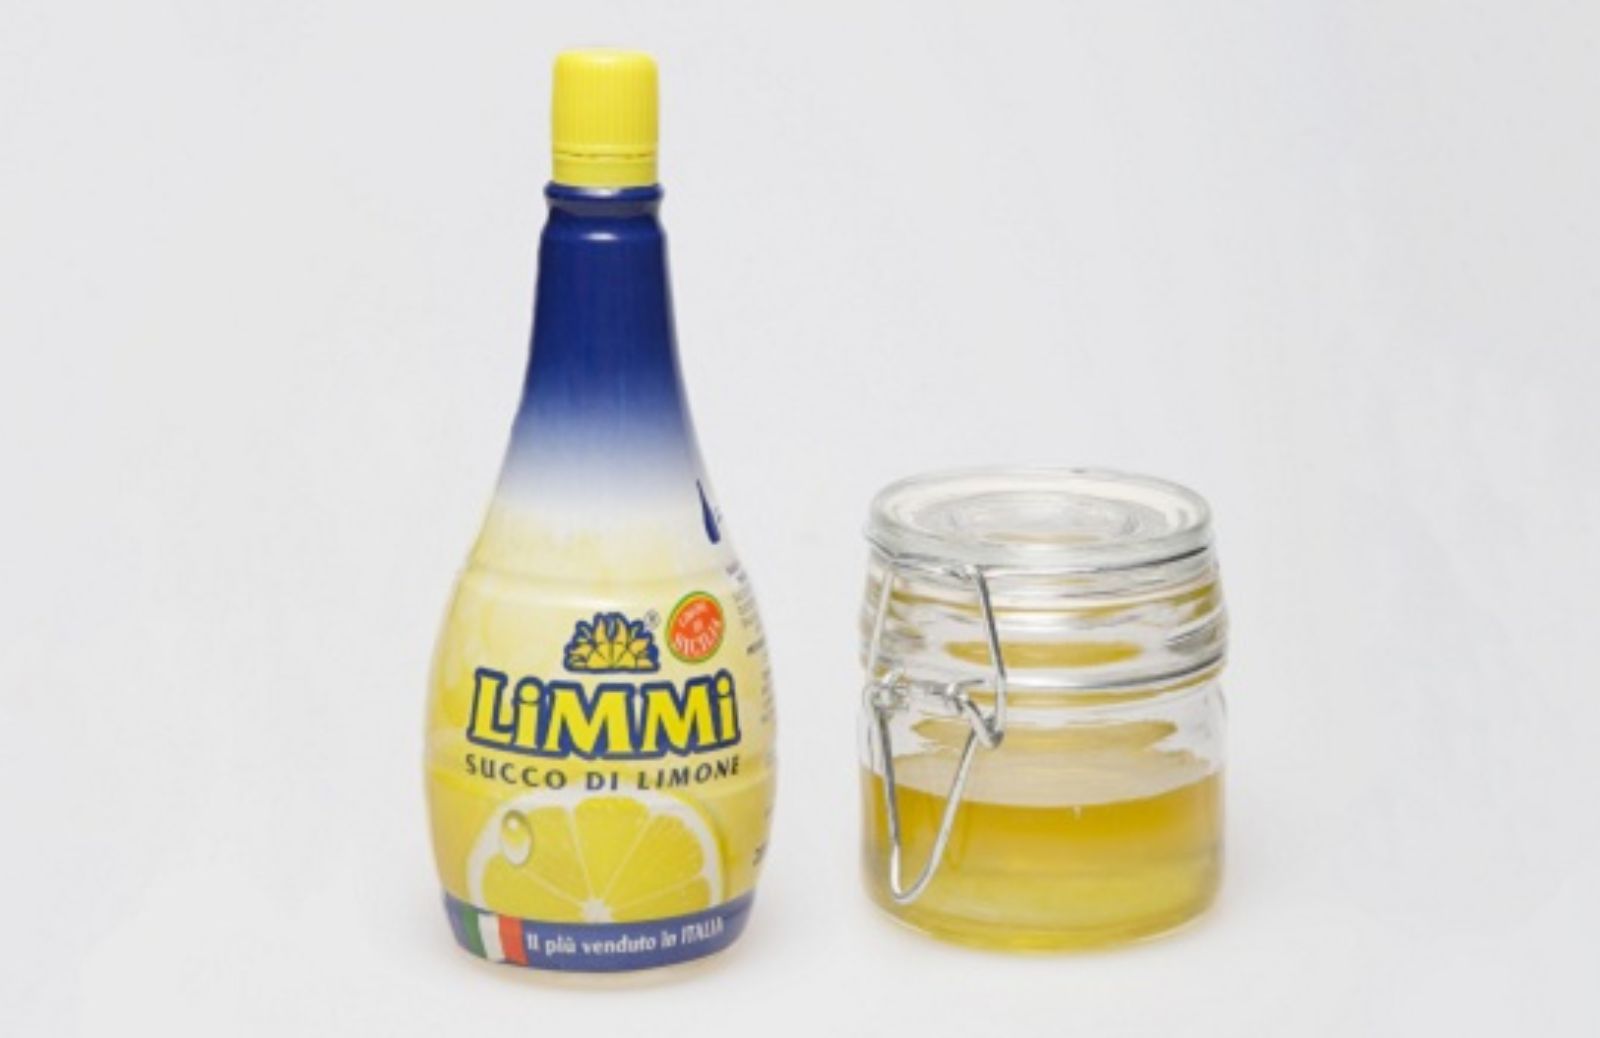 Ricette beauty con succo di limone: maschera pre-shampoo al limone e miele